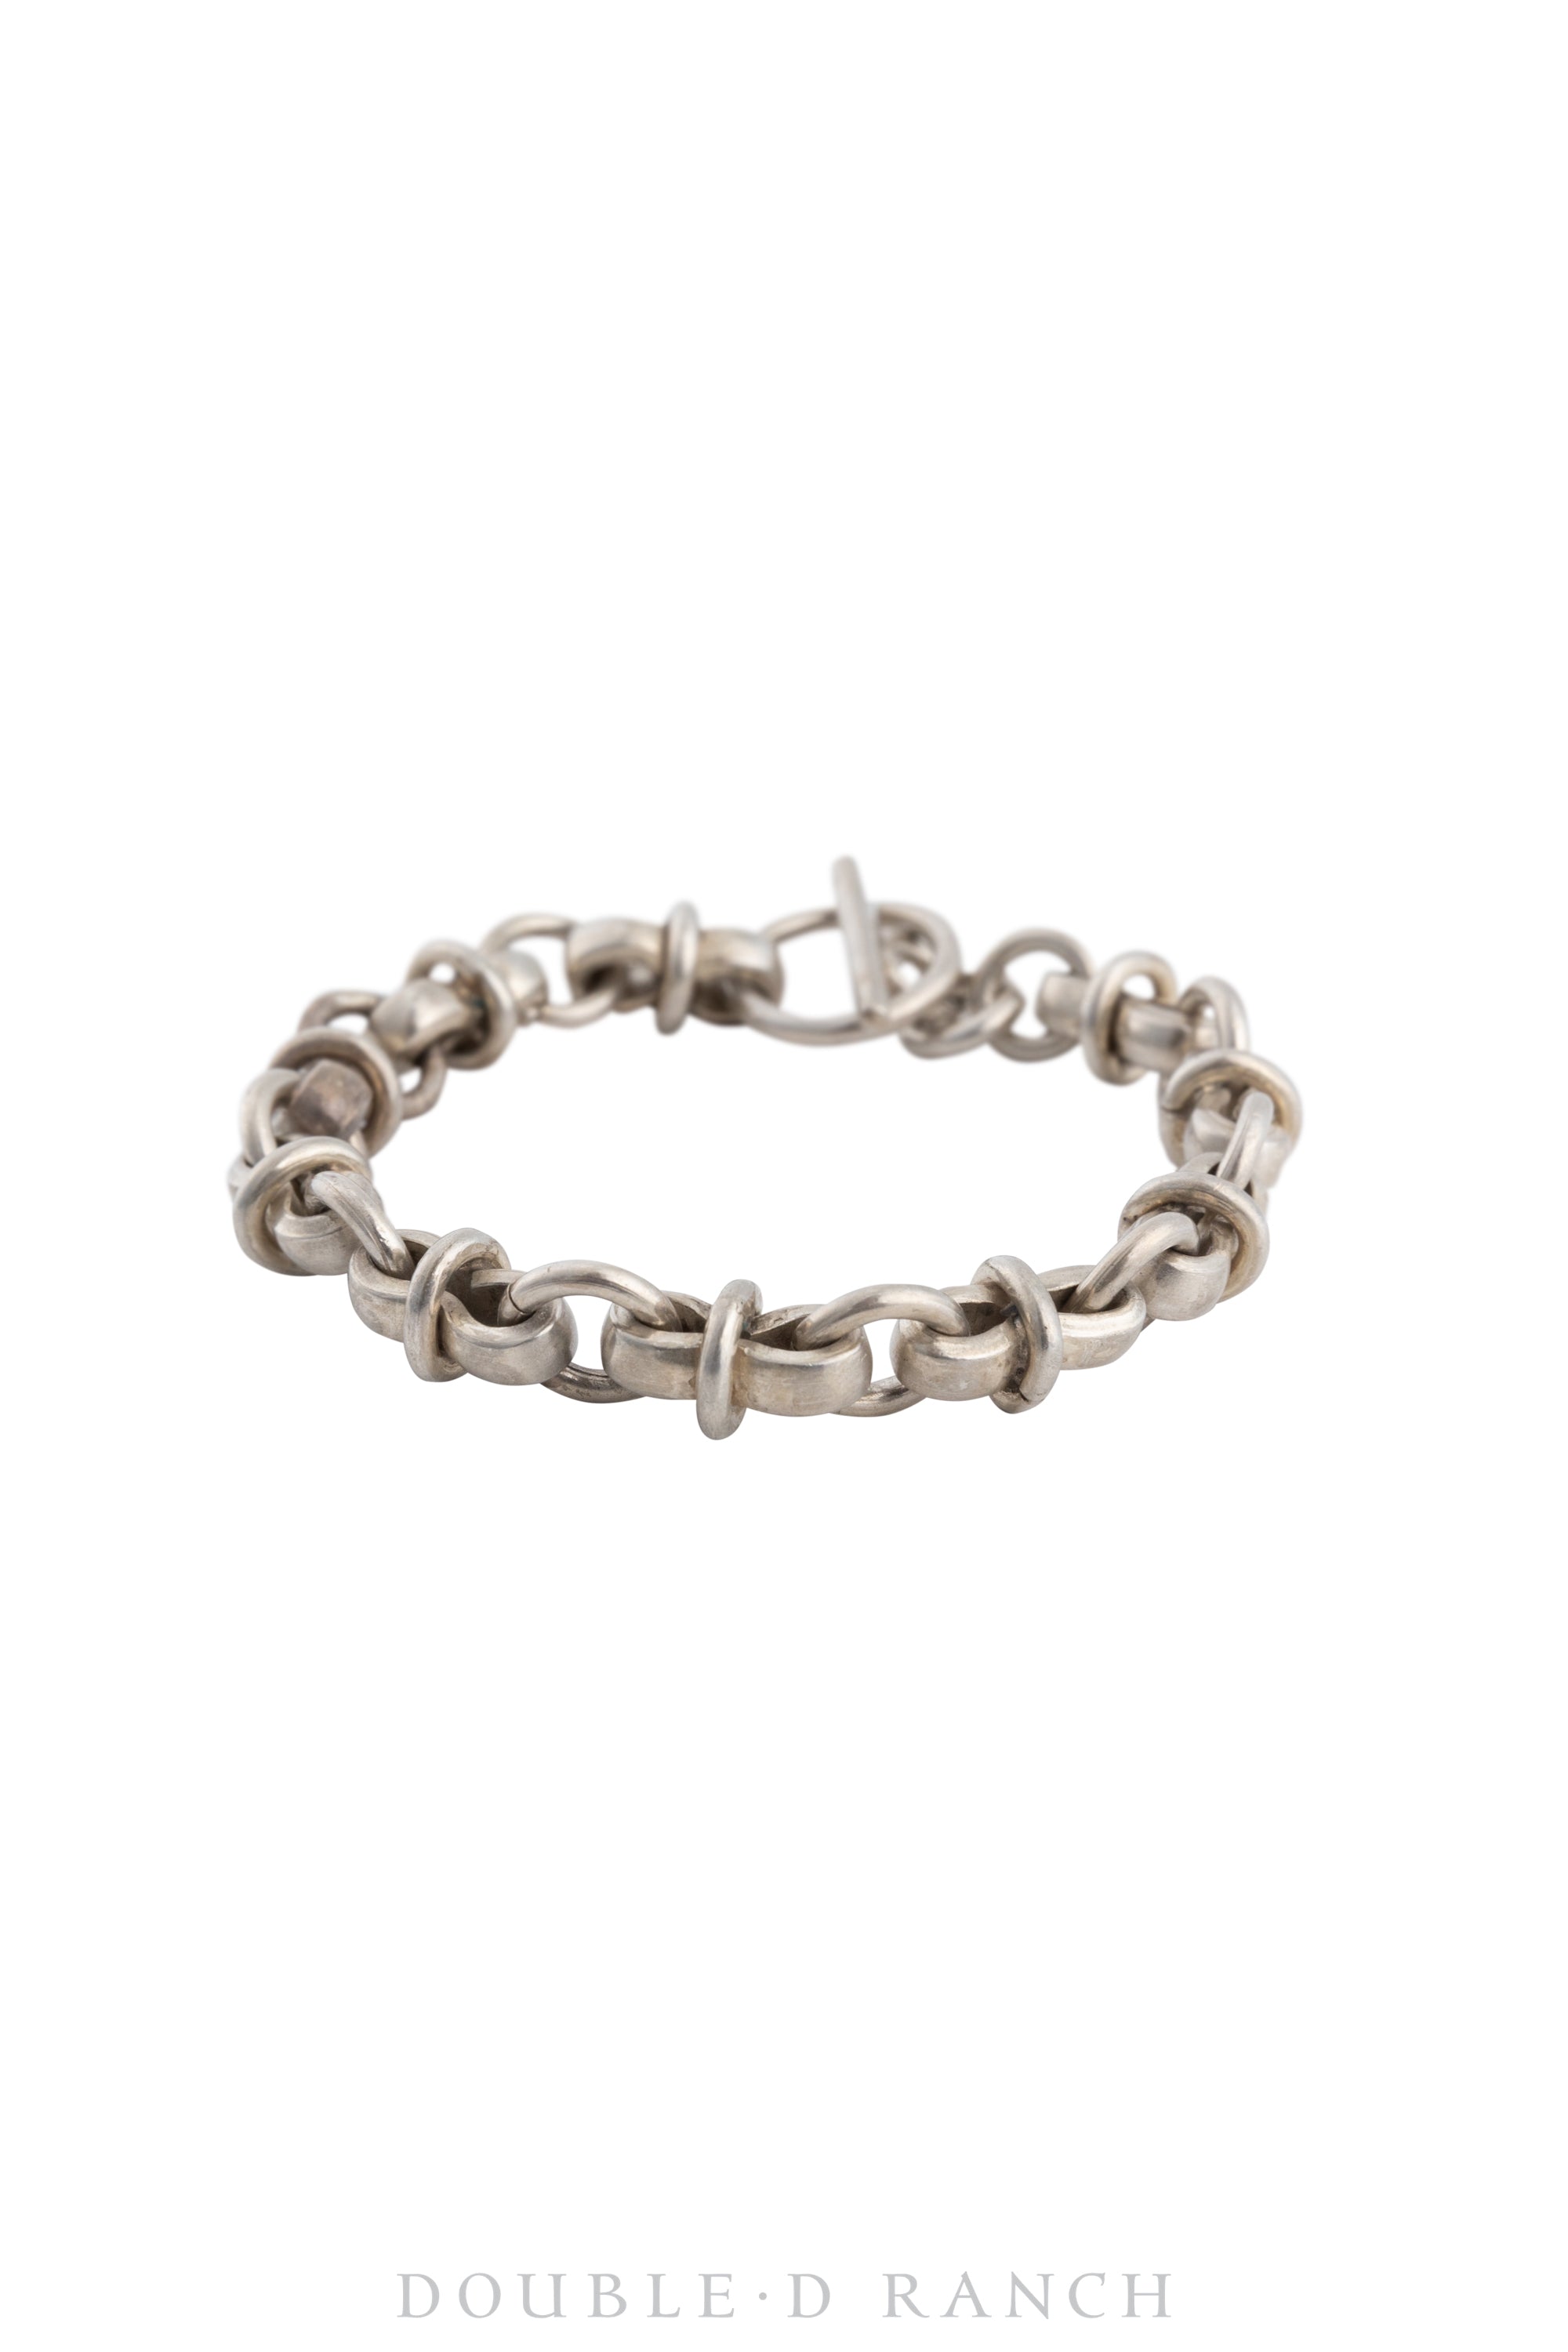 Bracelet, Chain Link, Sterling Silver, Hallmark, Vintage, 3682